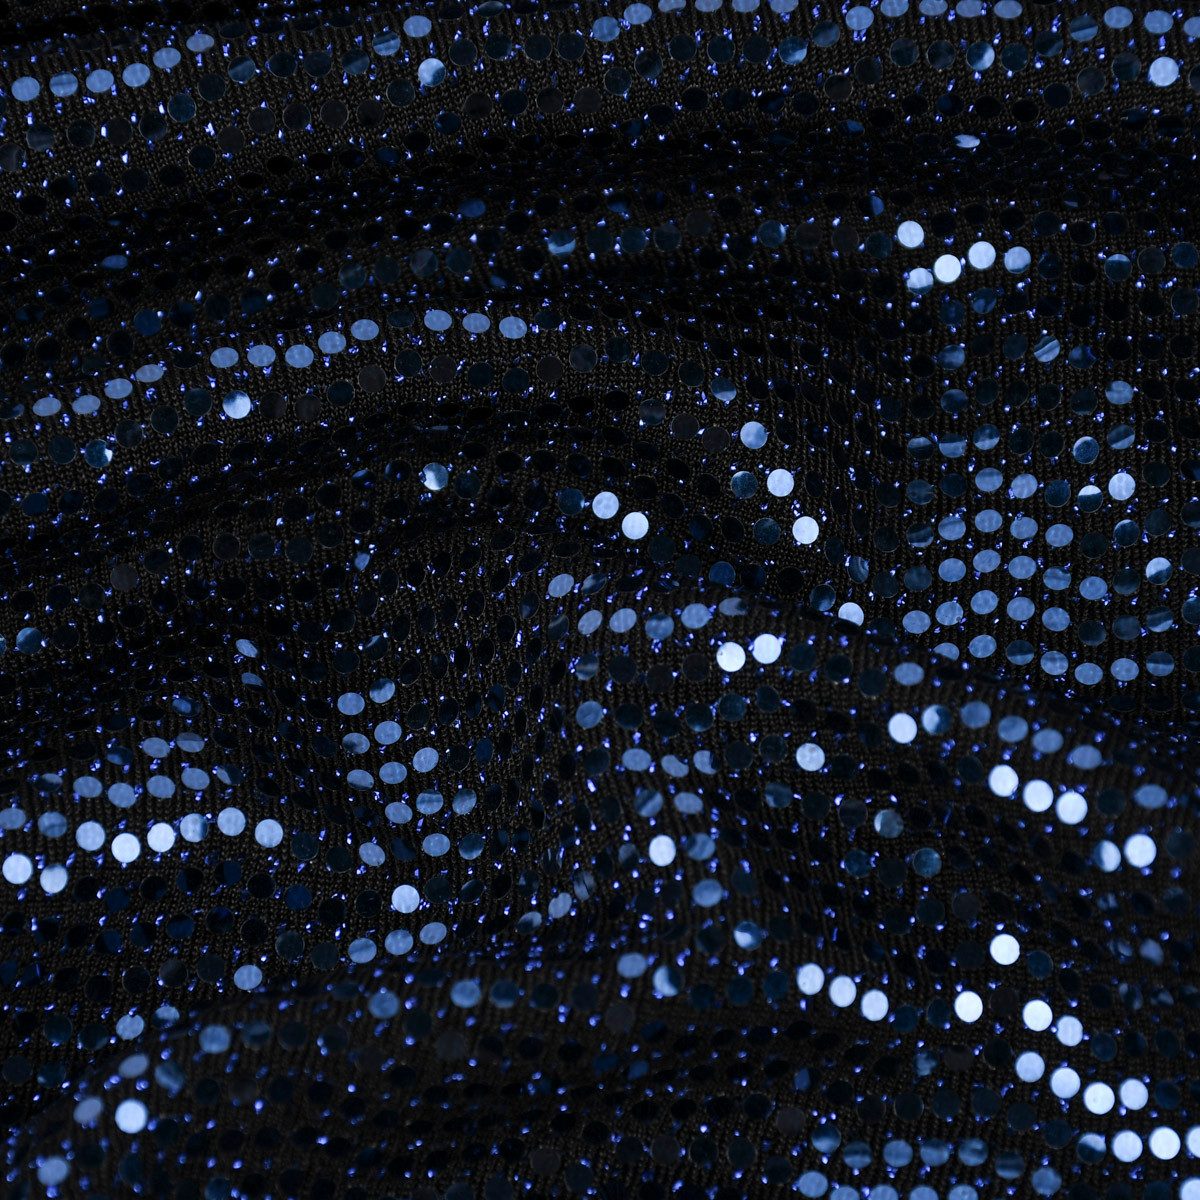 SCHÖNER LEBEN. Stoff Bekleidungsstoff Stretch Lurex Pailletten Glitzer schwarz blau 1,45m, mit Metallic-Effekt